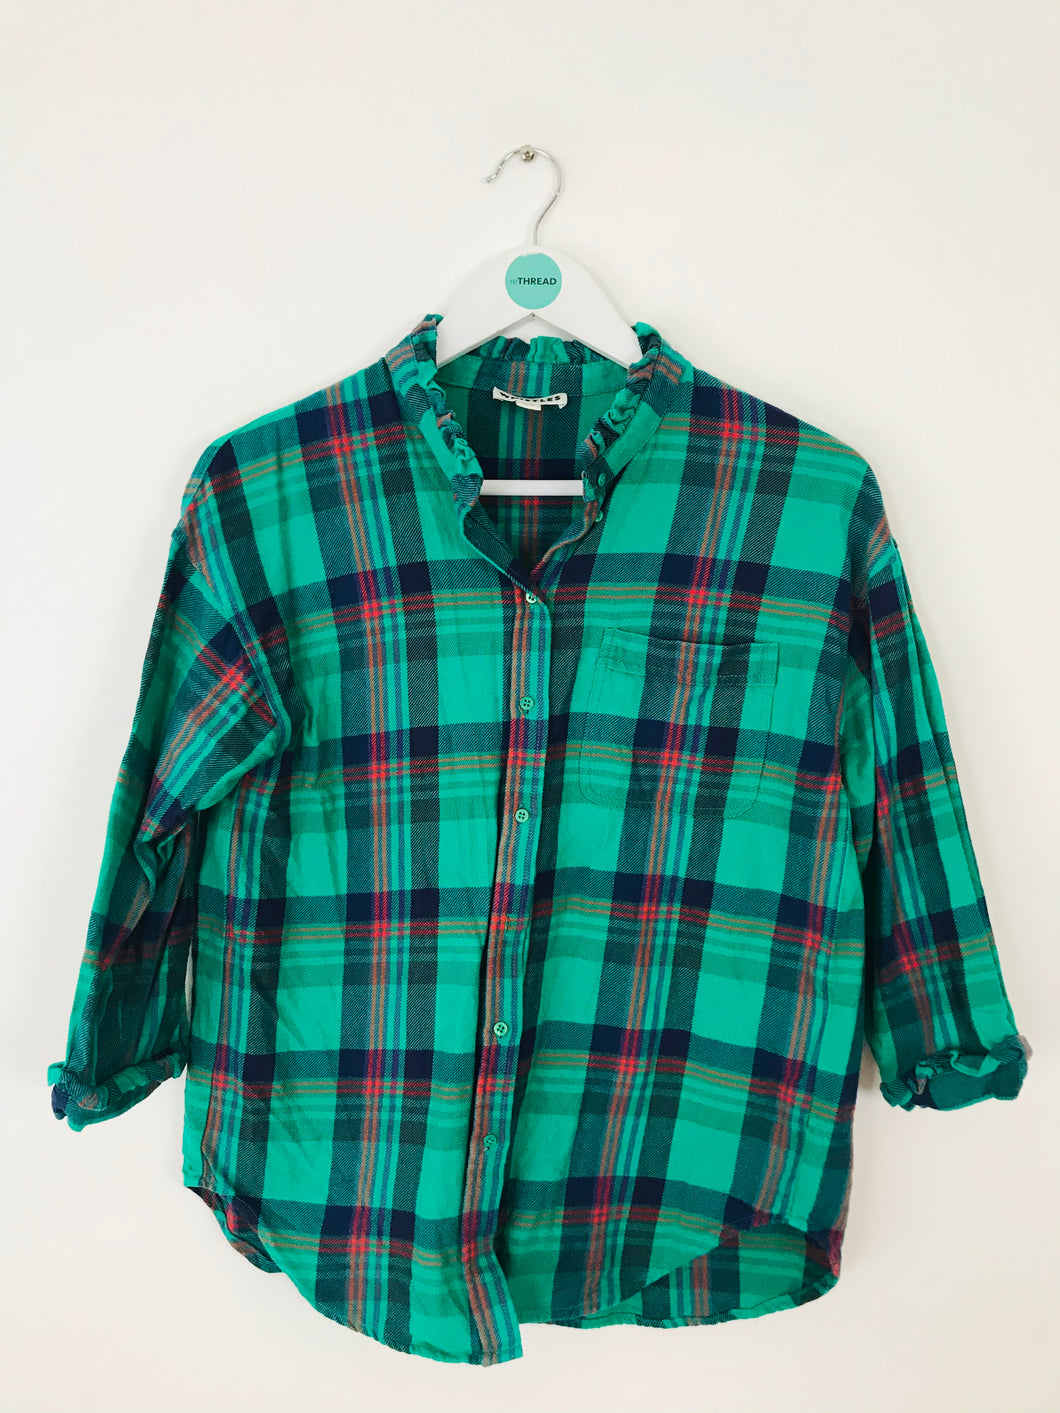 Whistles Women’s Oversized Frill Check Shirt | UK6 | Green